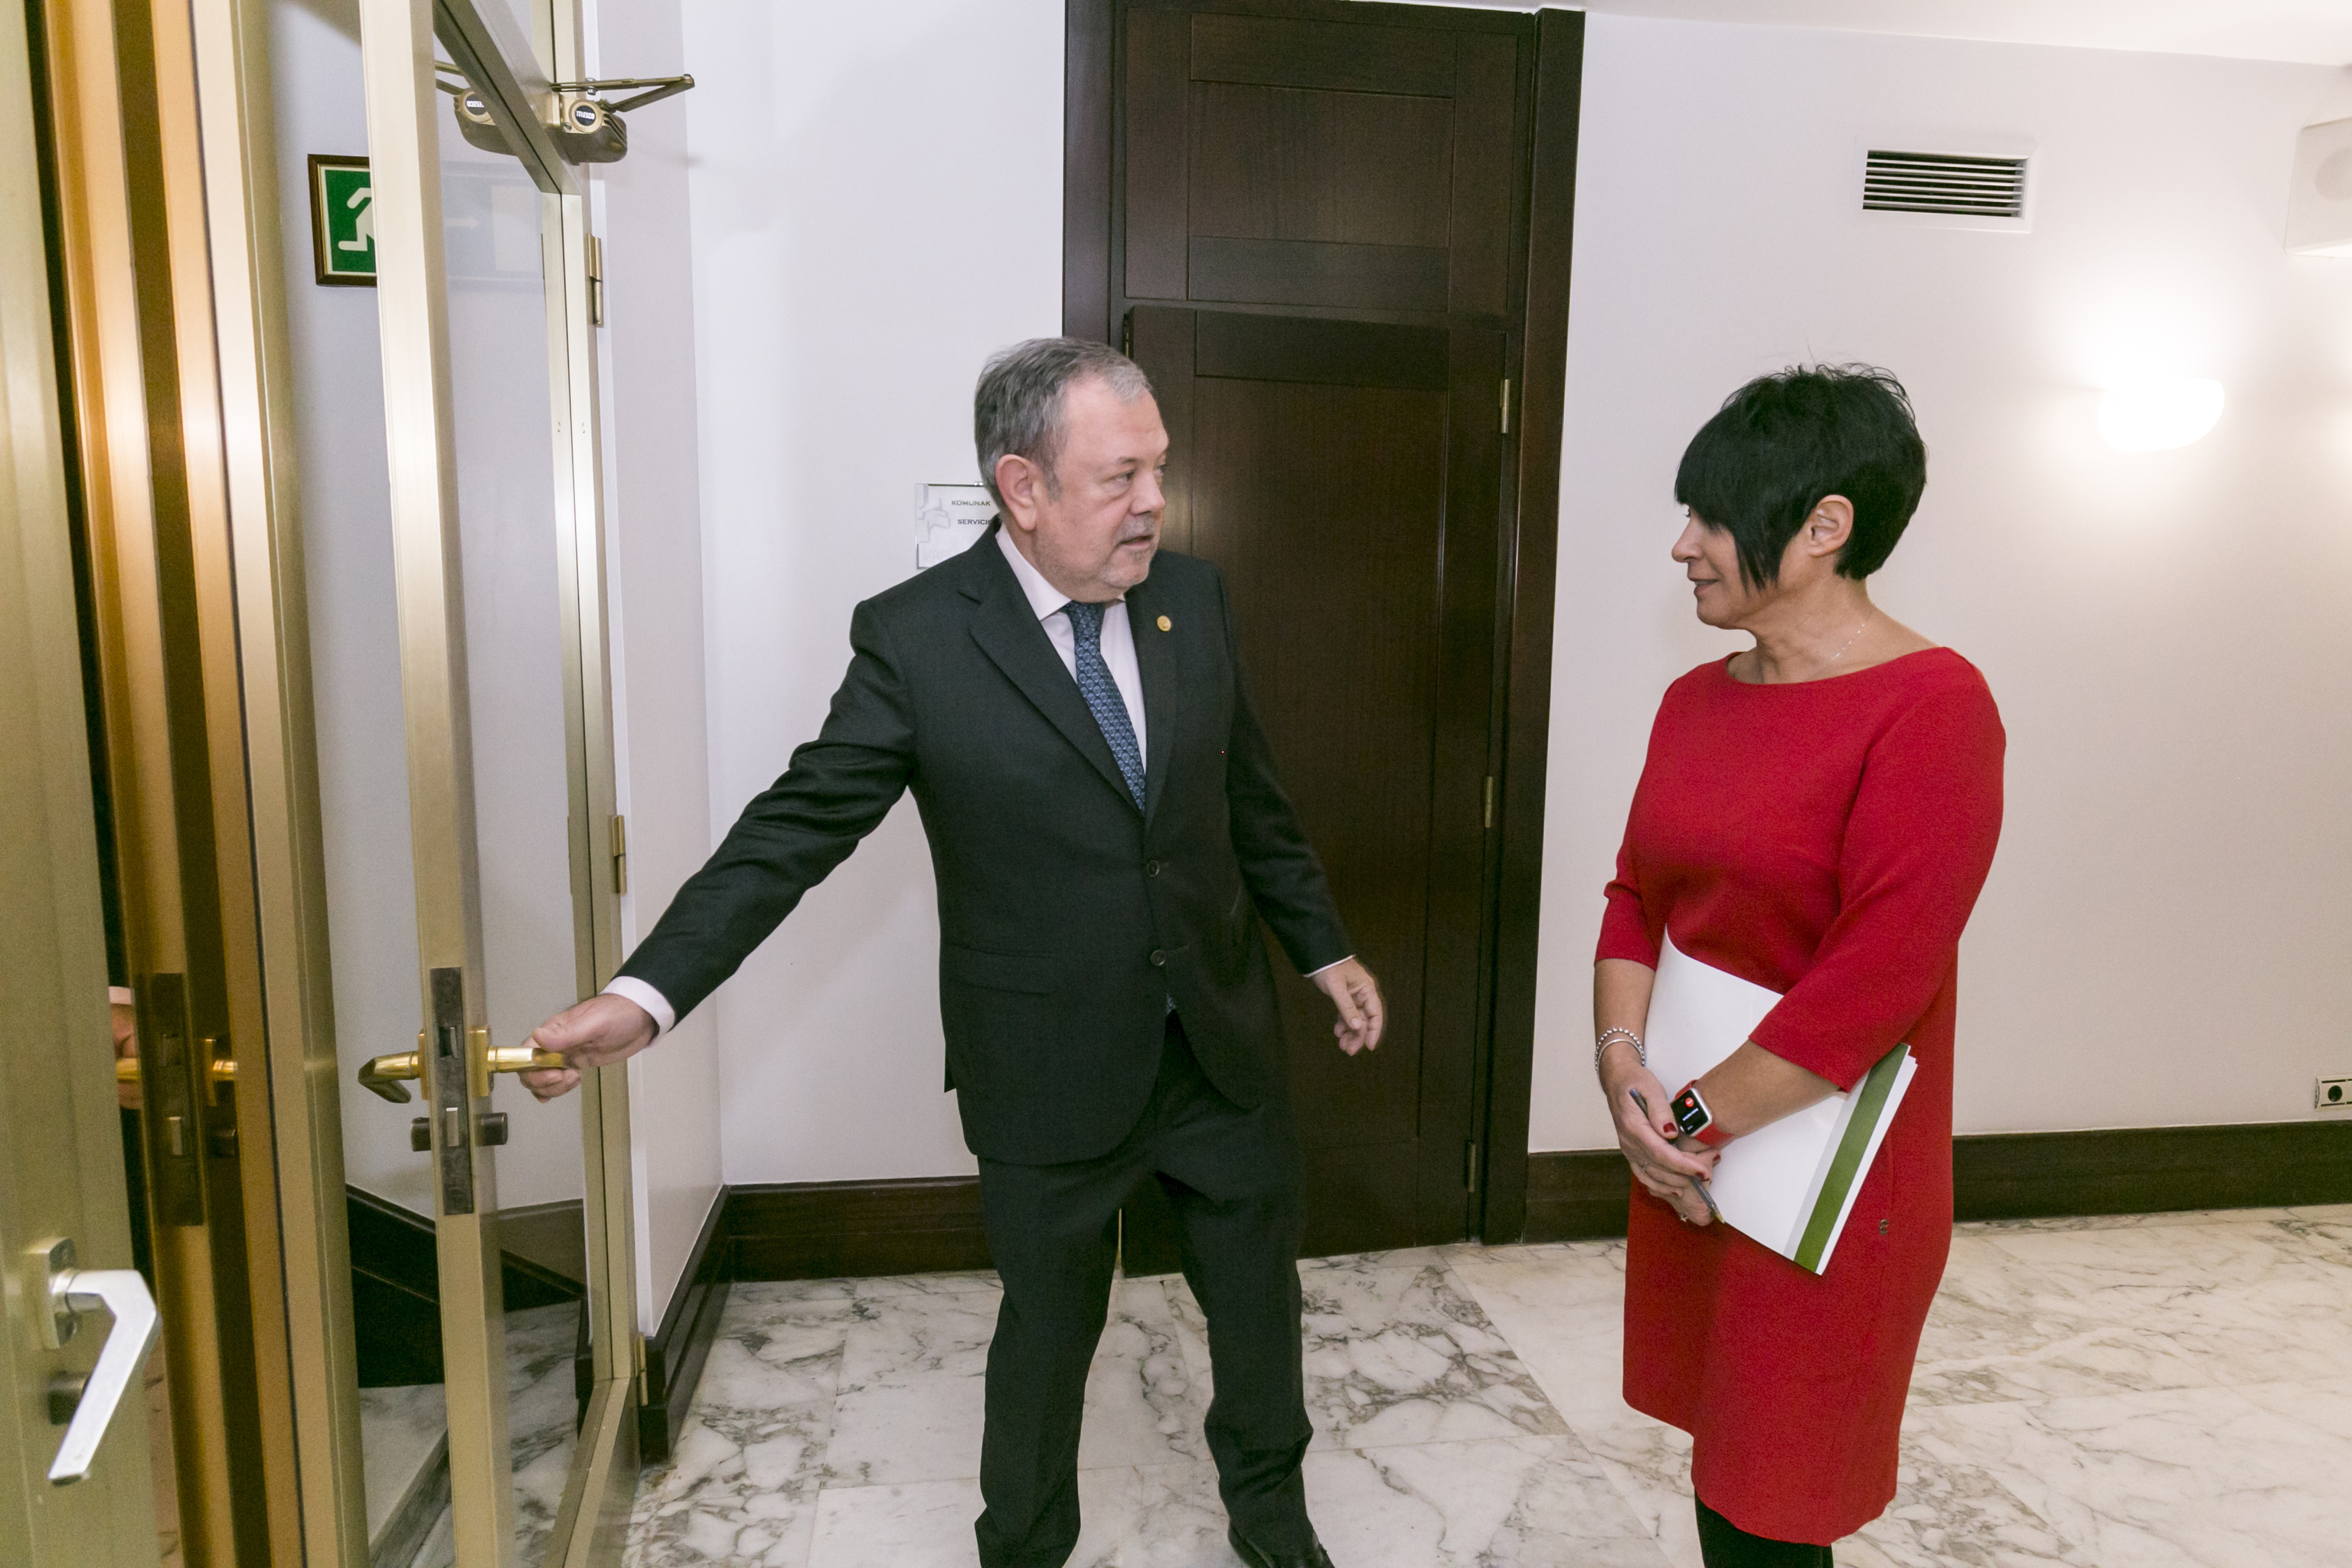 El consejero Pedro Azpiazu abre la puerta de las dependencias del Parlamento Vasco a la portavoz de EH Bildu Maddalen Iriarte.